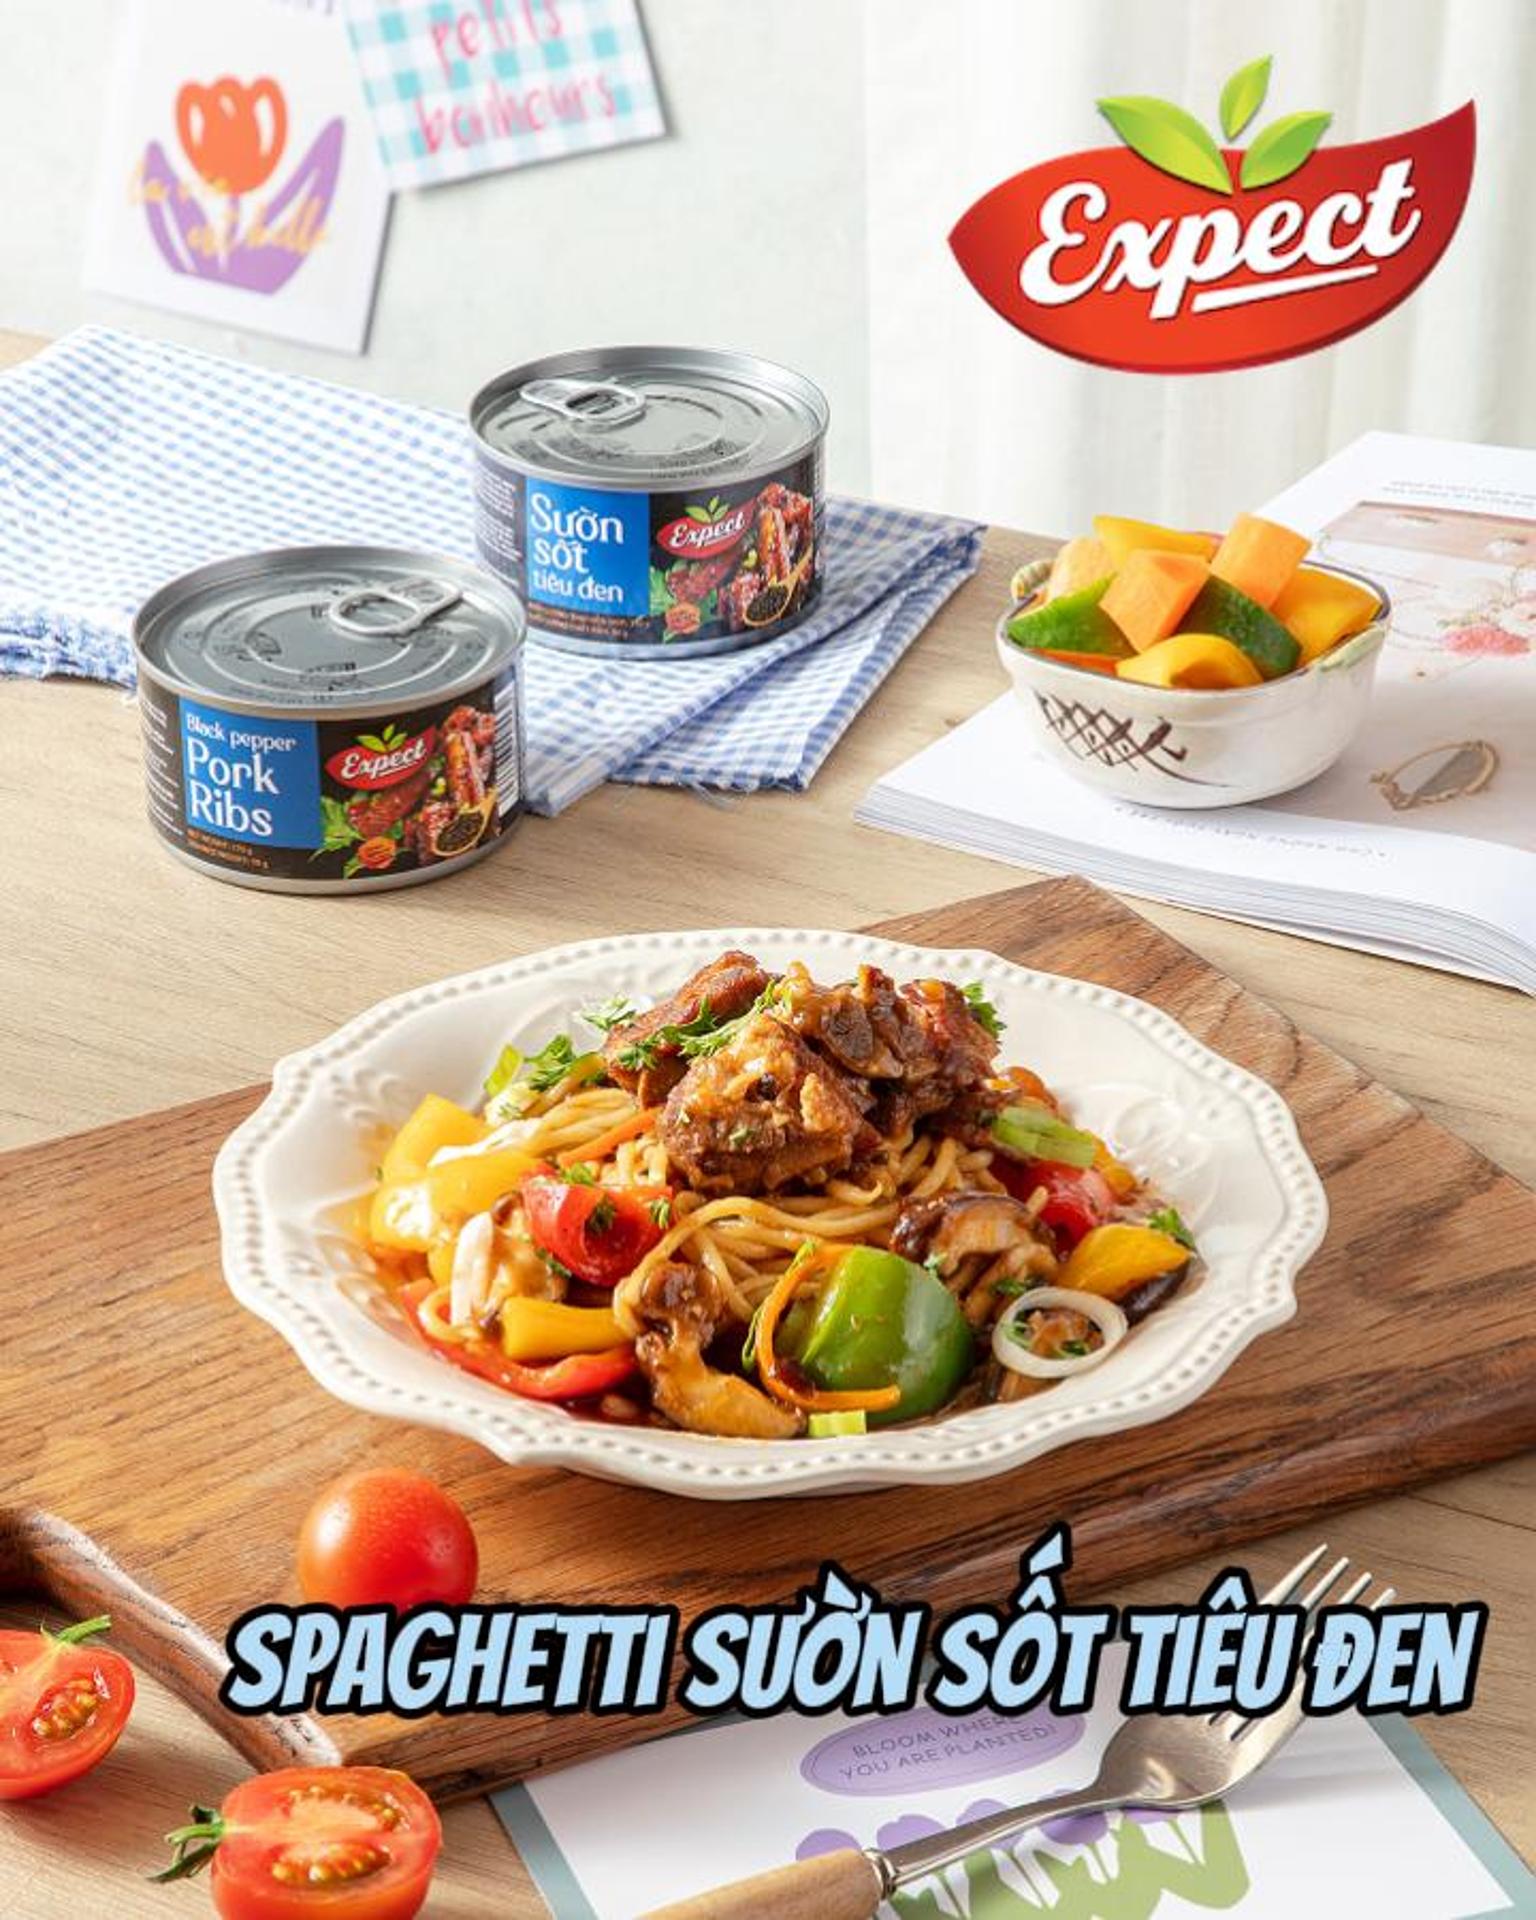 [Video] - Mỳ Spaghetti sườn sốt tiêu đen